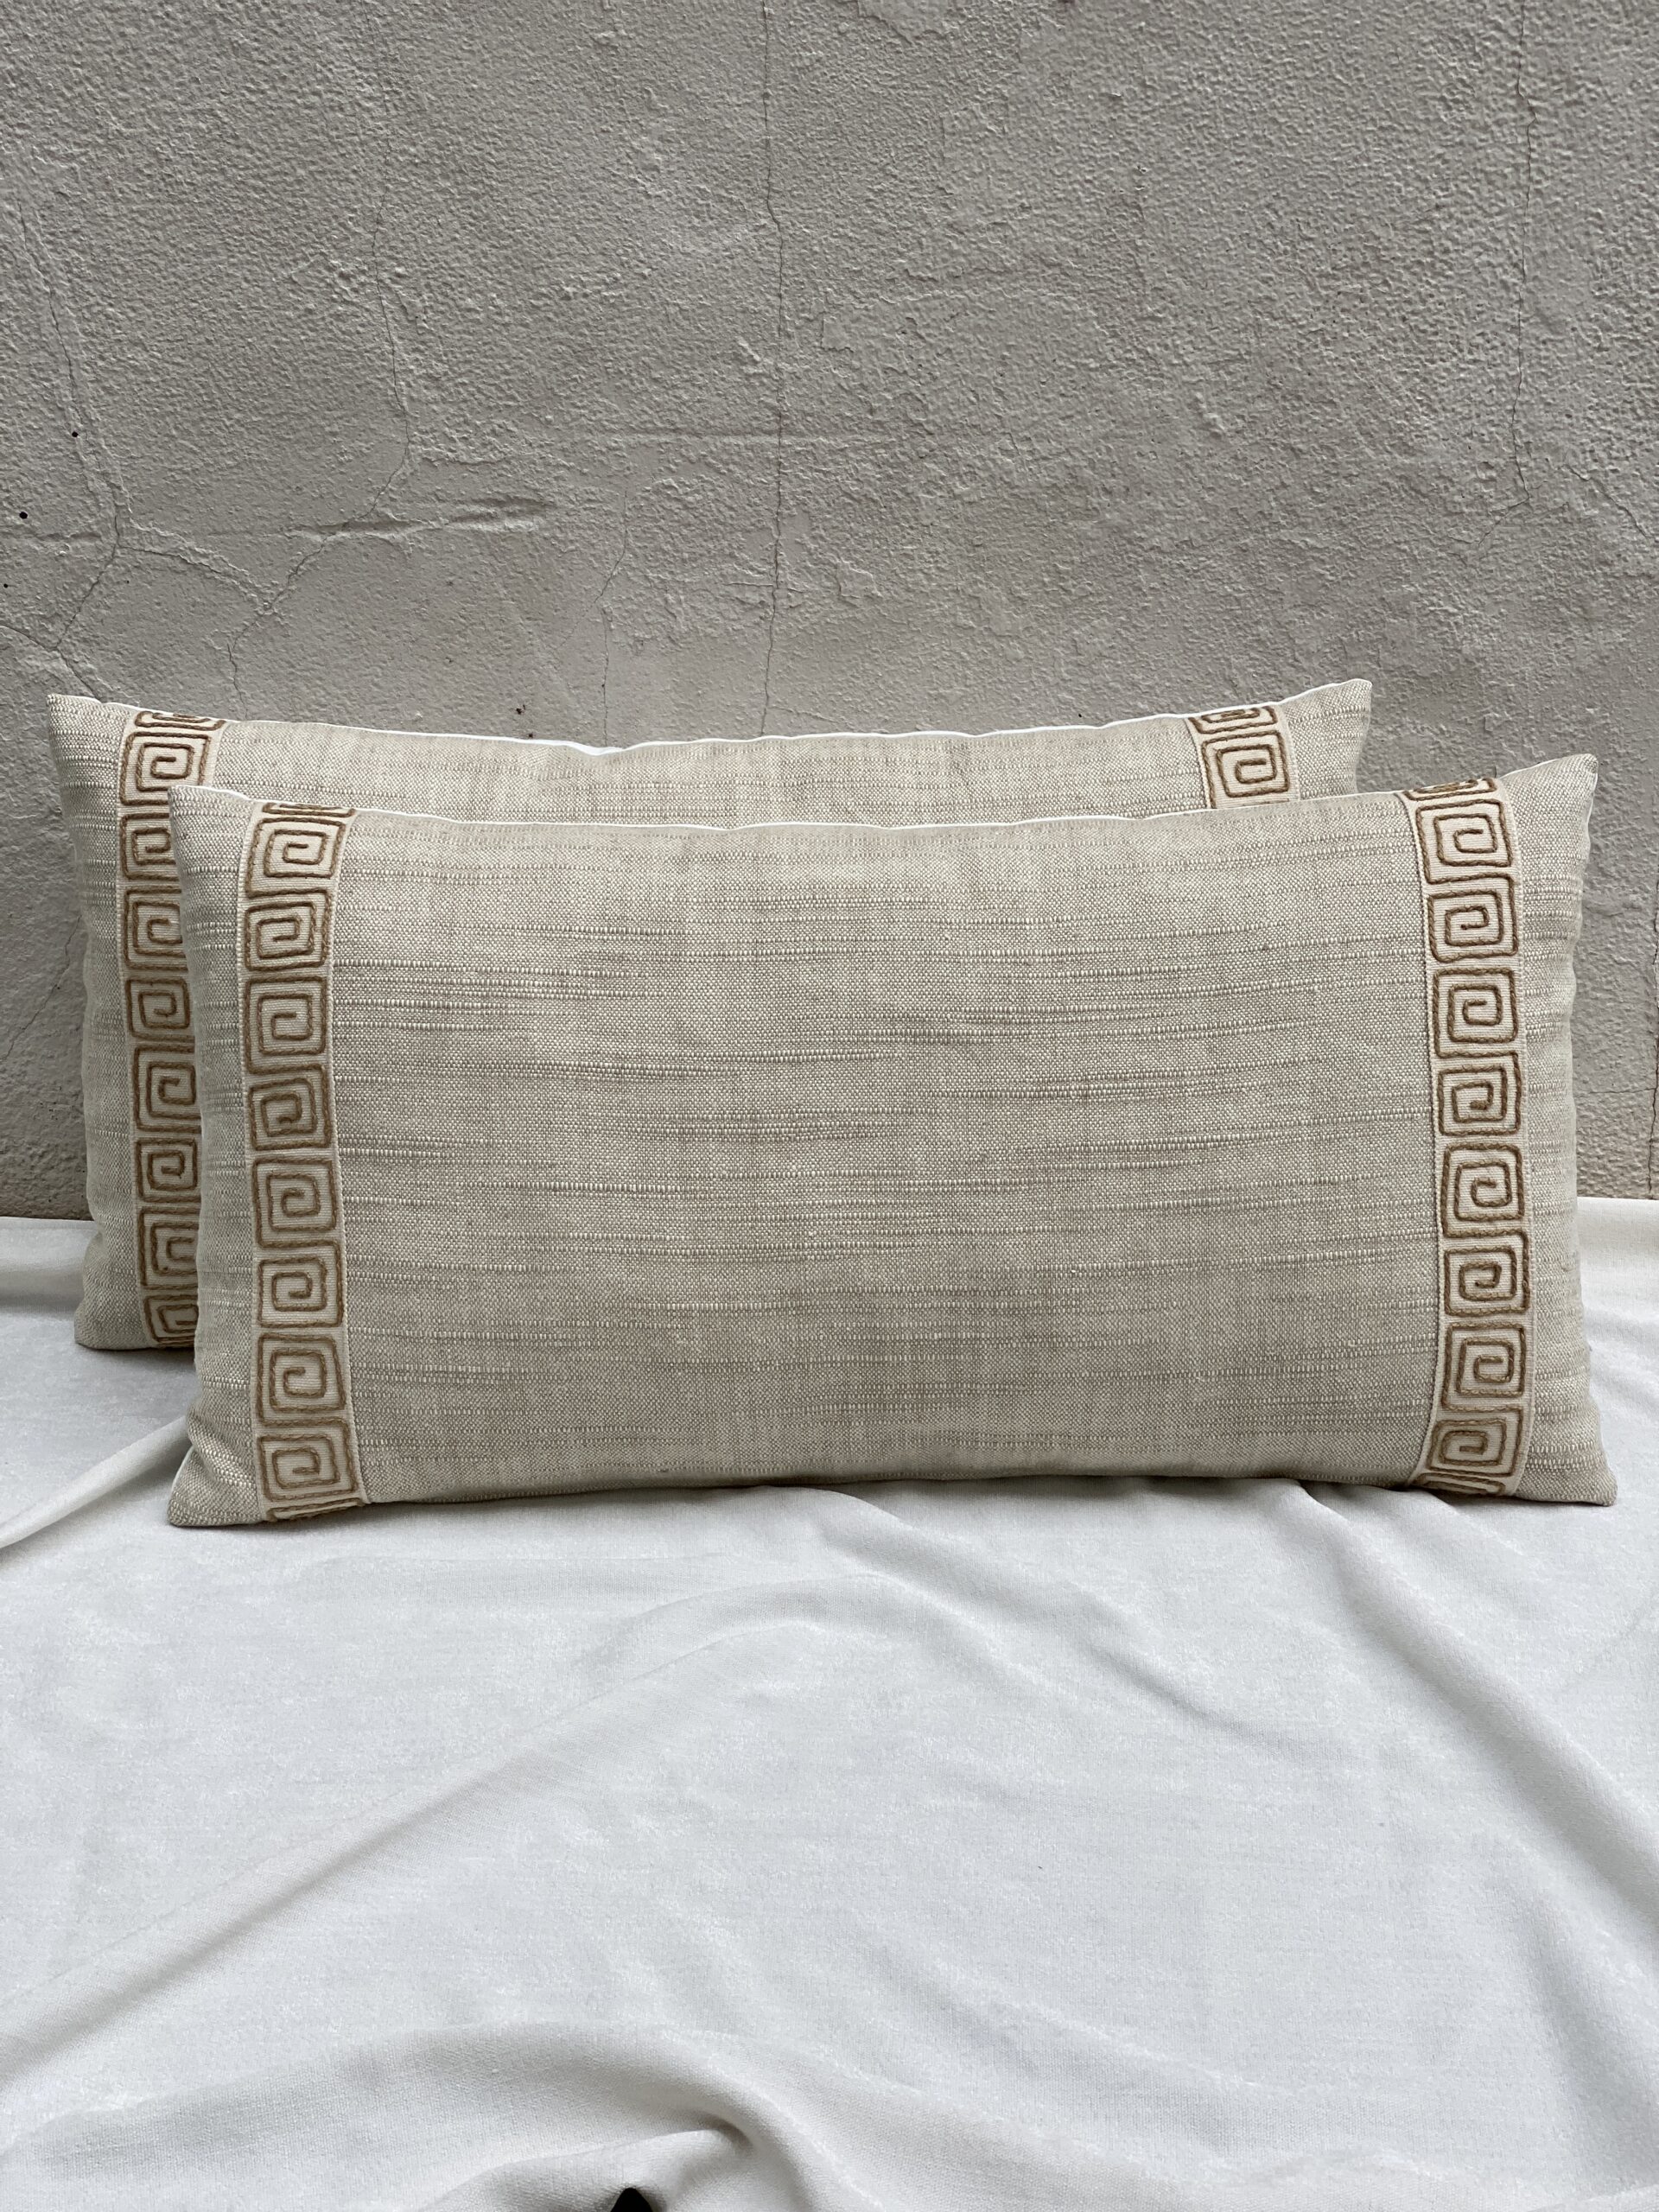 Rose Tarlow Linen Pillows